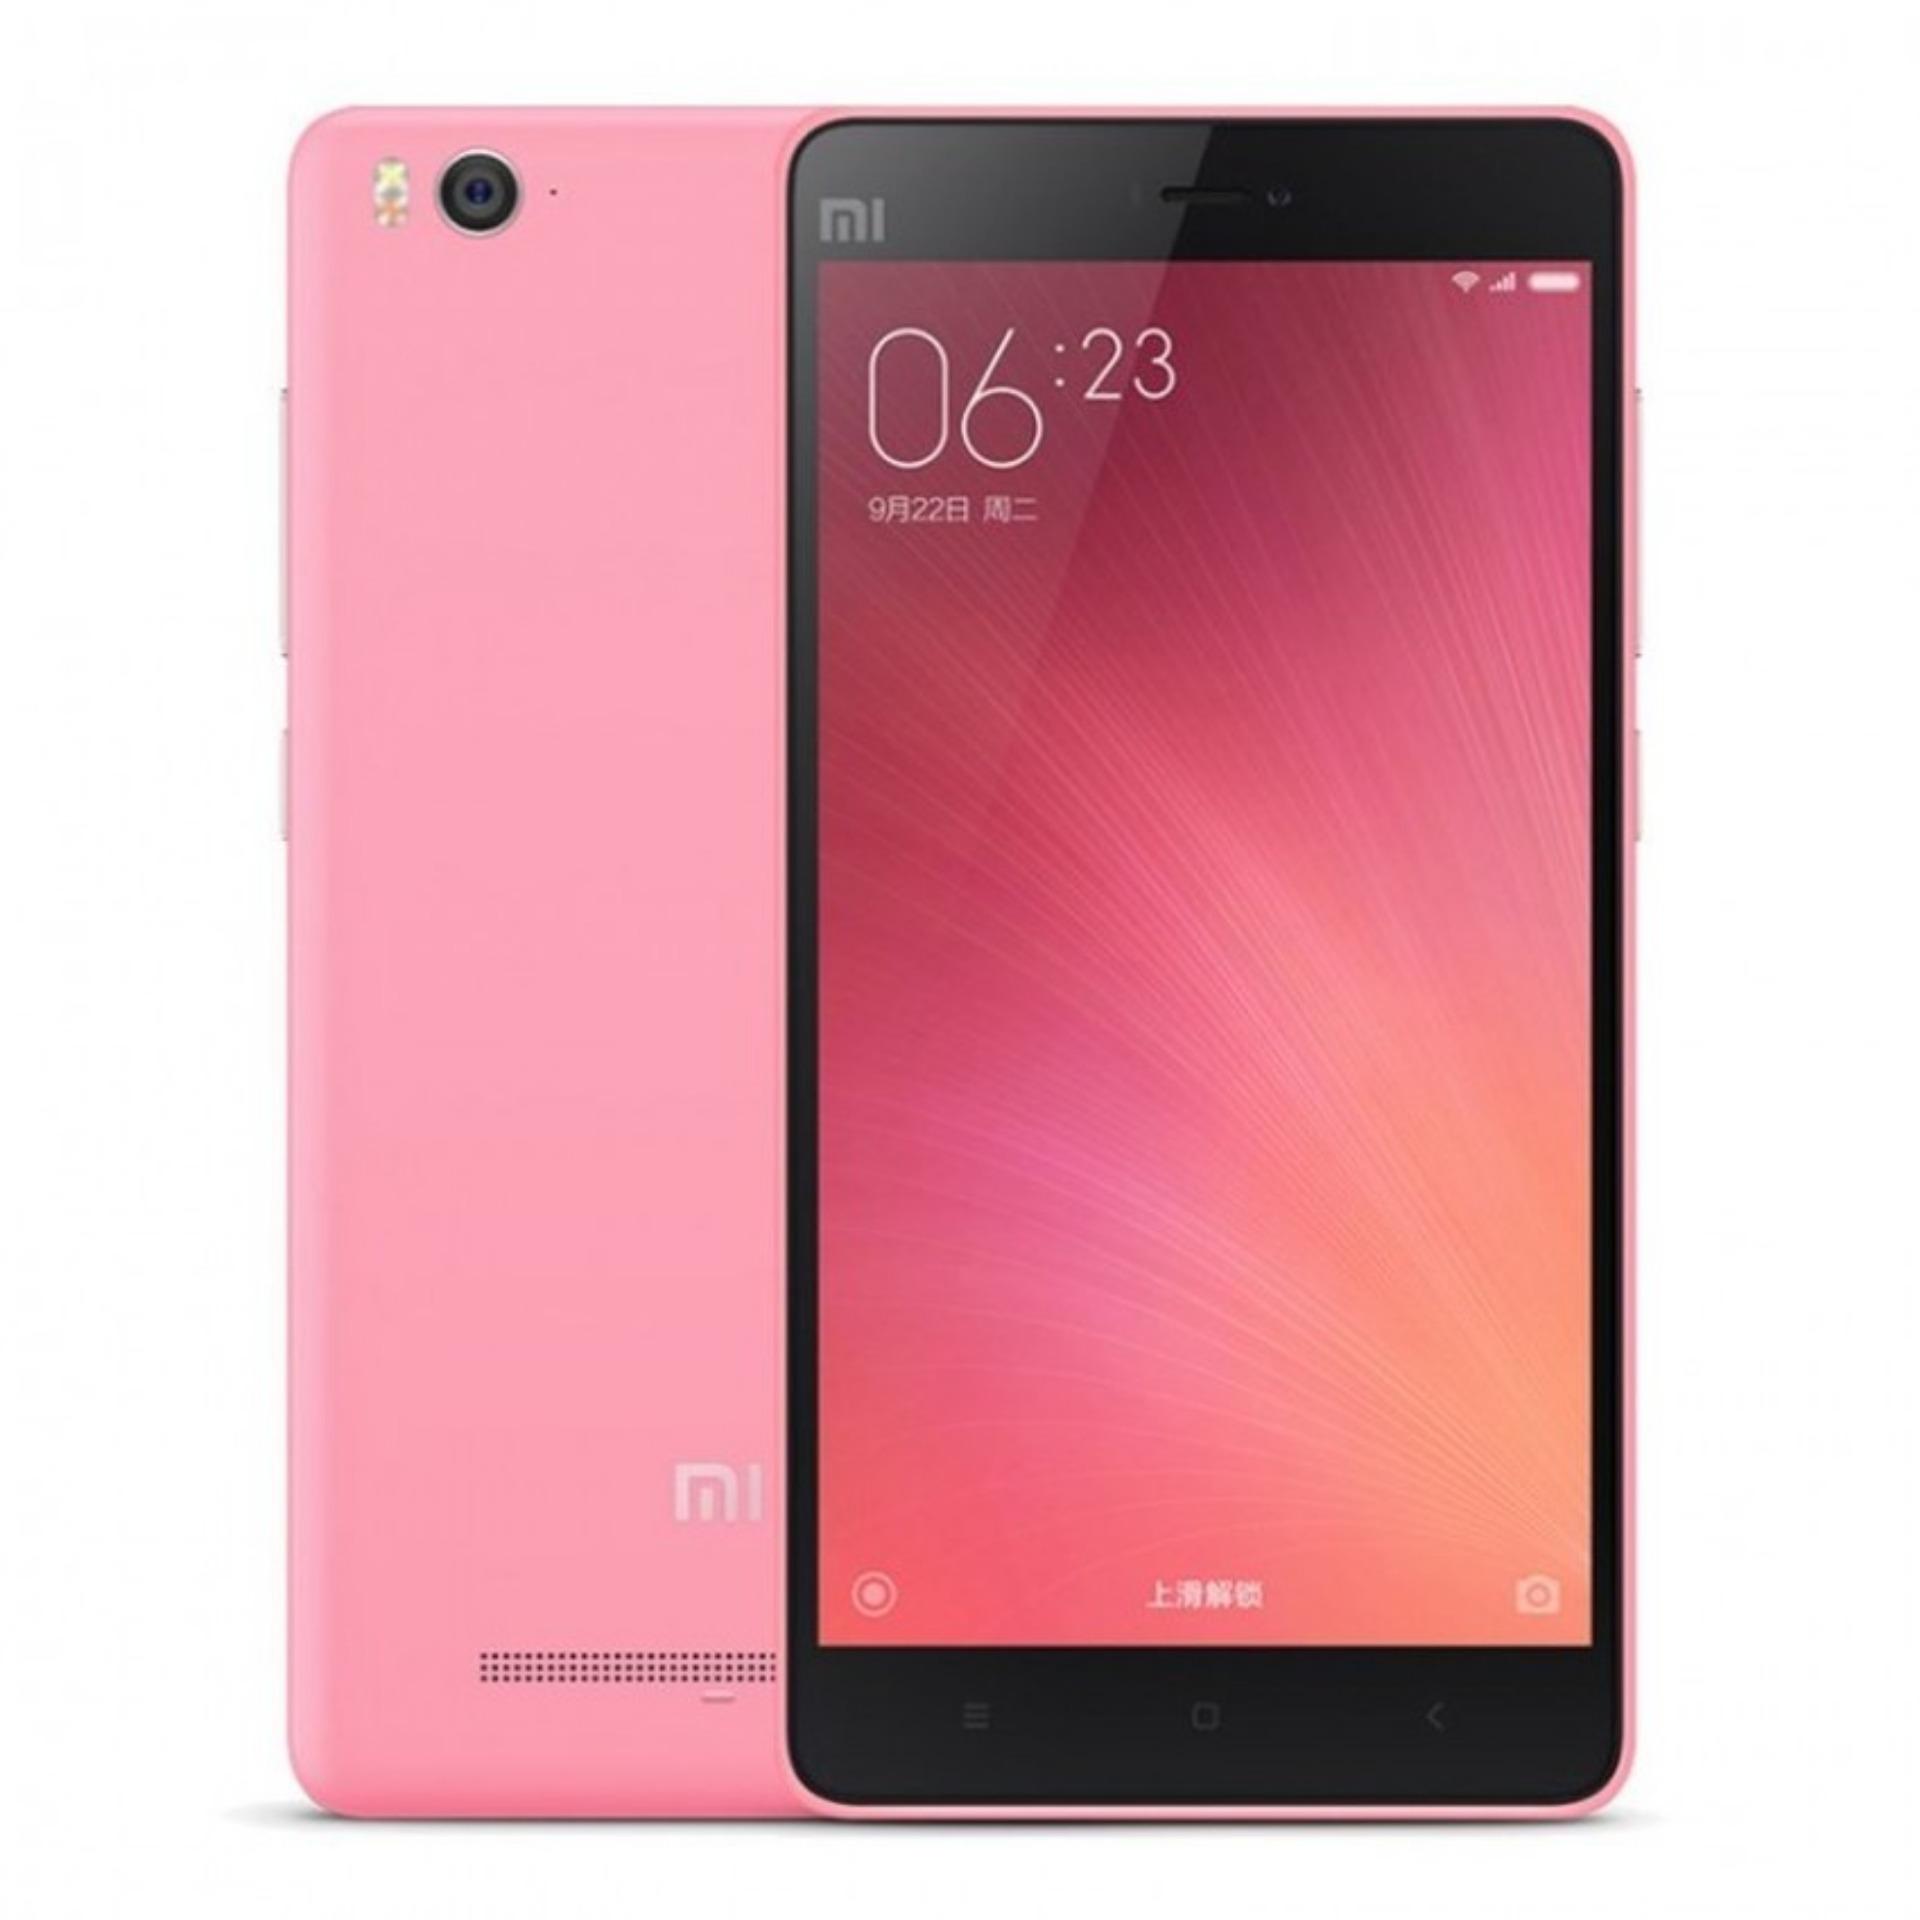 Xiaomi Mi 4c - 16 GB - Pink 